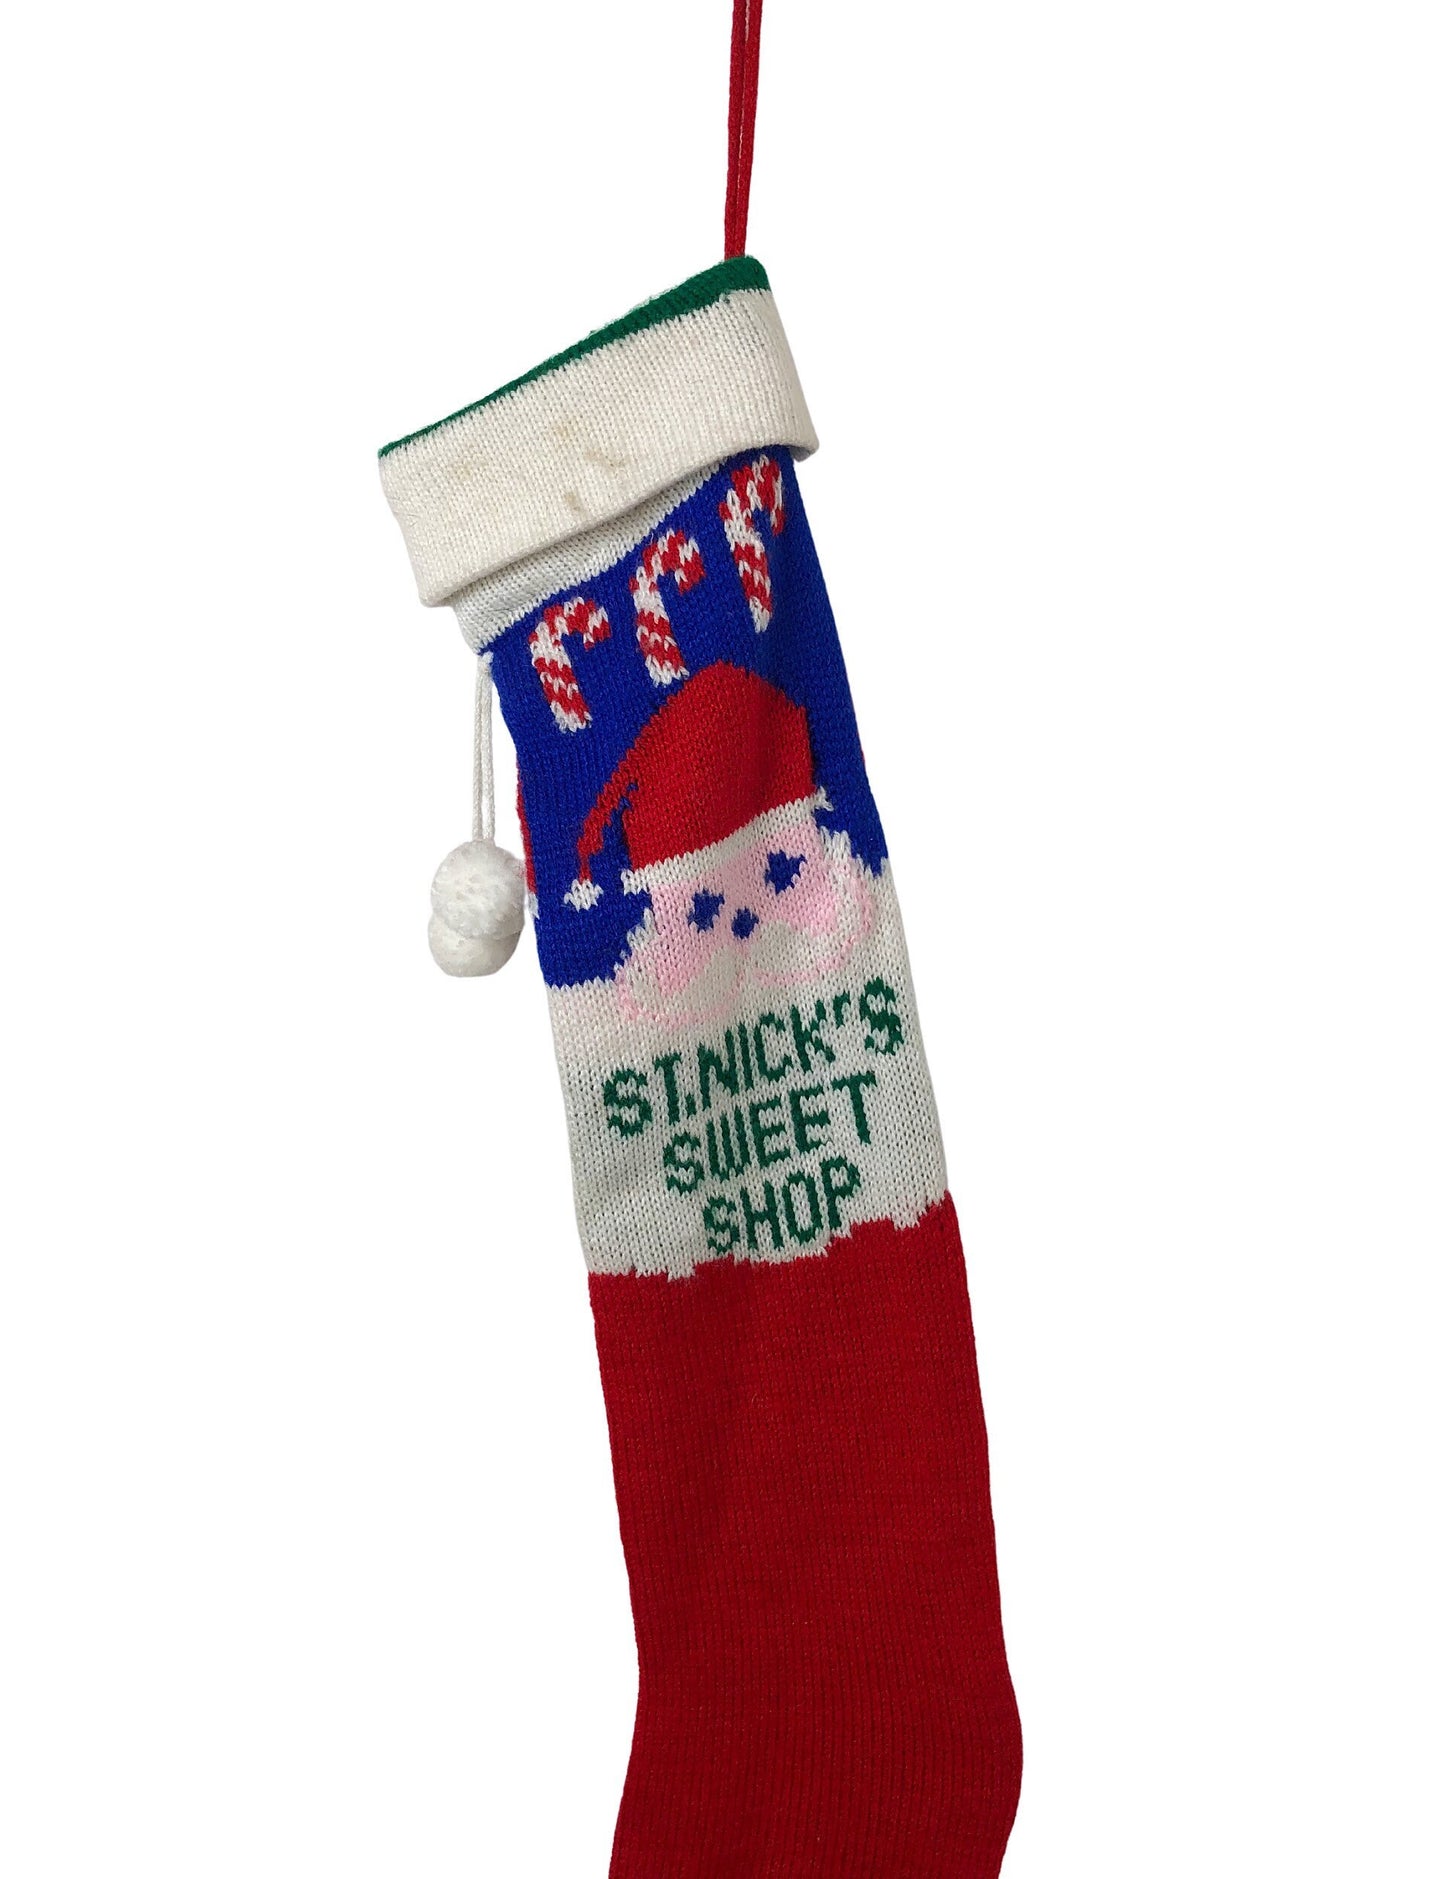 60’s Sweet Shop St Nicholas Pom Pom Santa Christmas Sweater Stocking